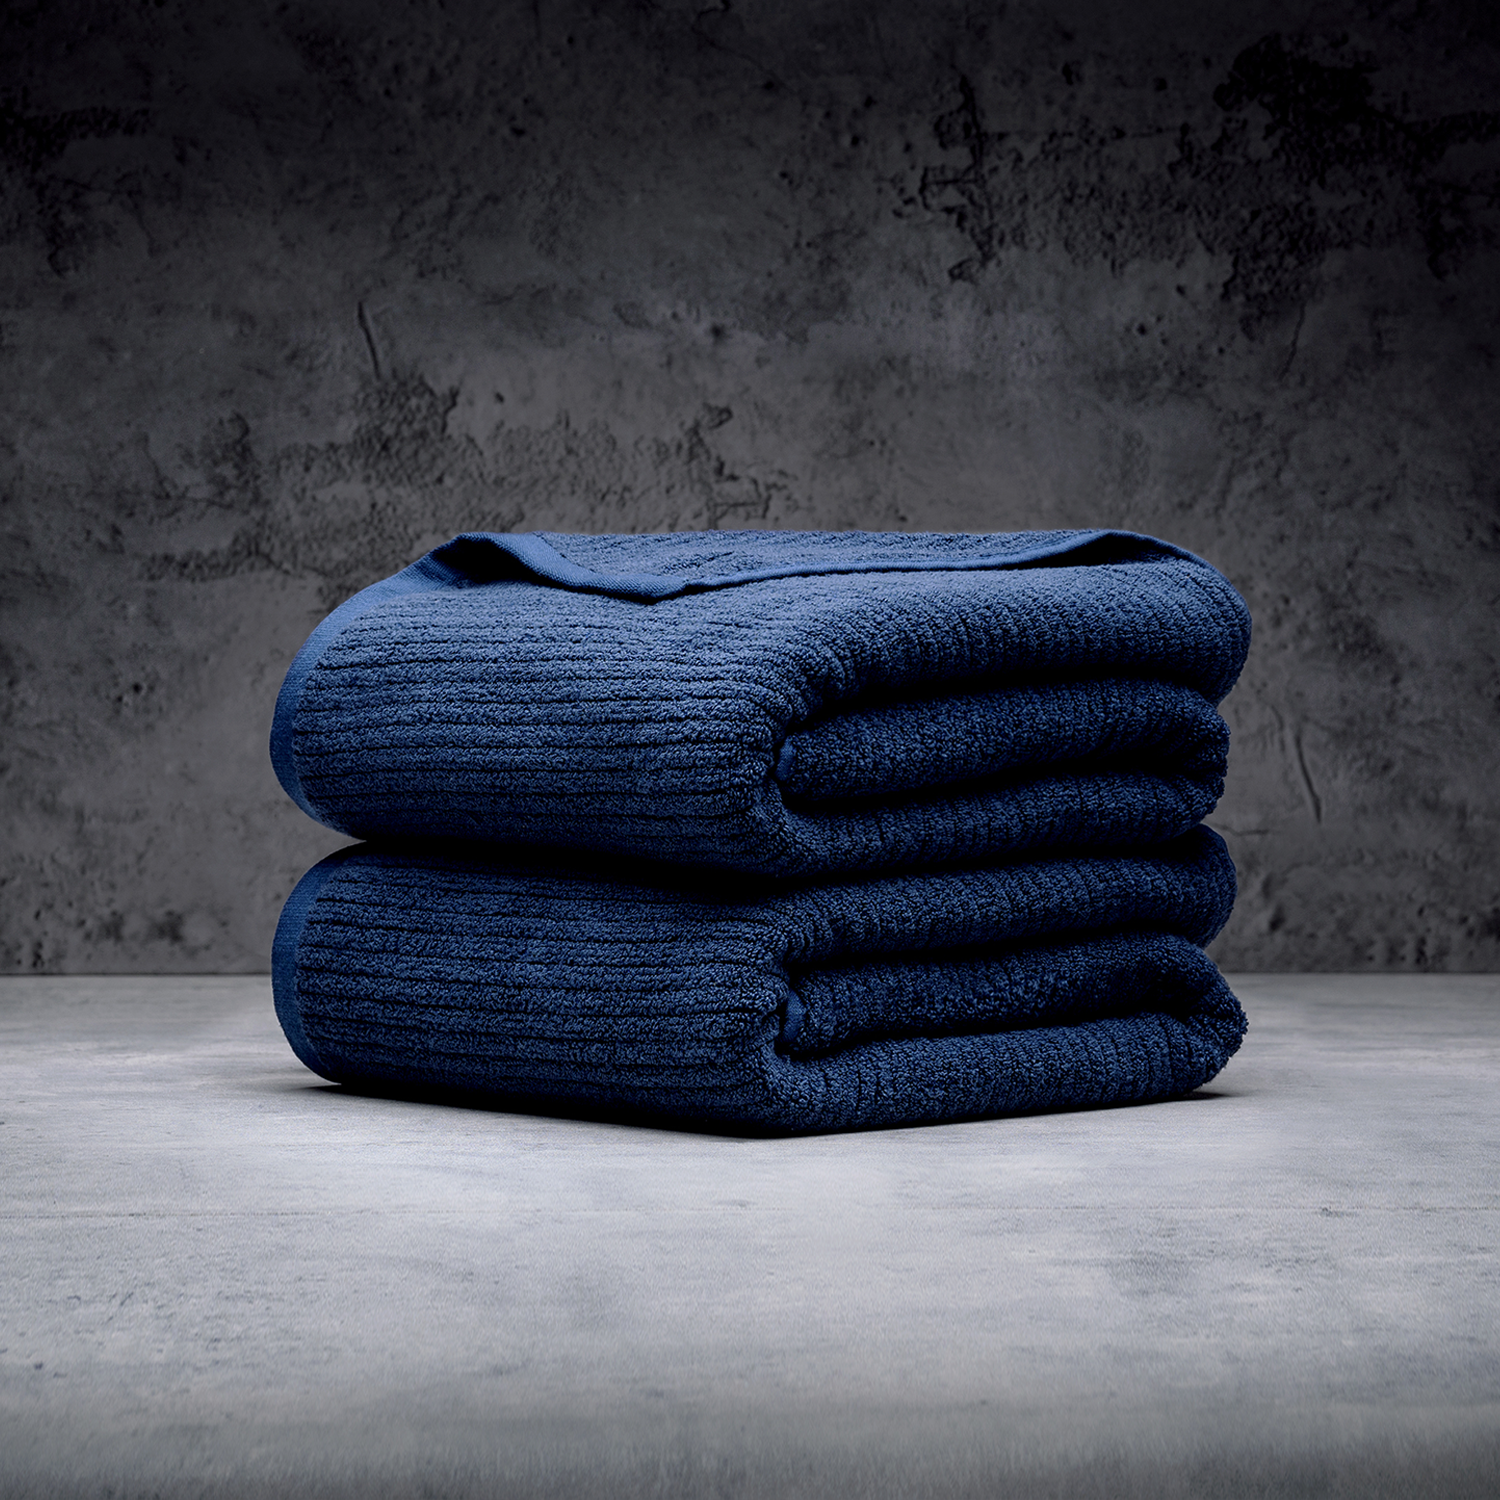 Oversized Bath Towels Luxury Sheet Extra Large Body Wrap 100 Cotton Blue  Set 2